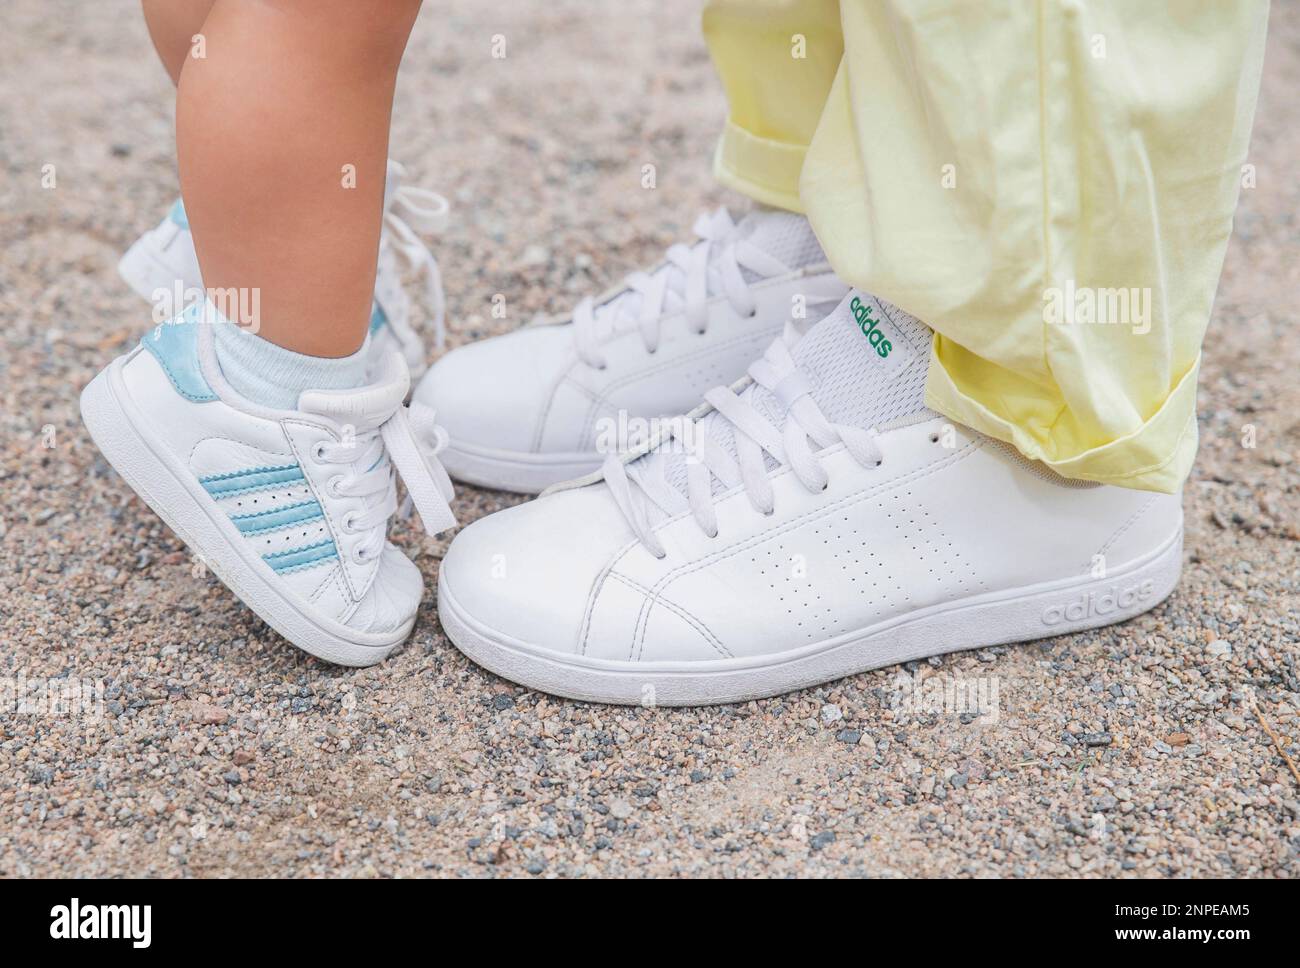 Maman et fille sont dans les mêmes sneakers blanches Adidas Photo Stock -  Alamy